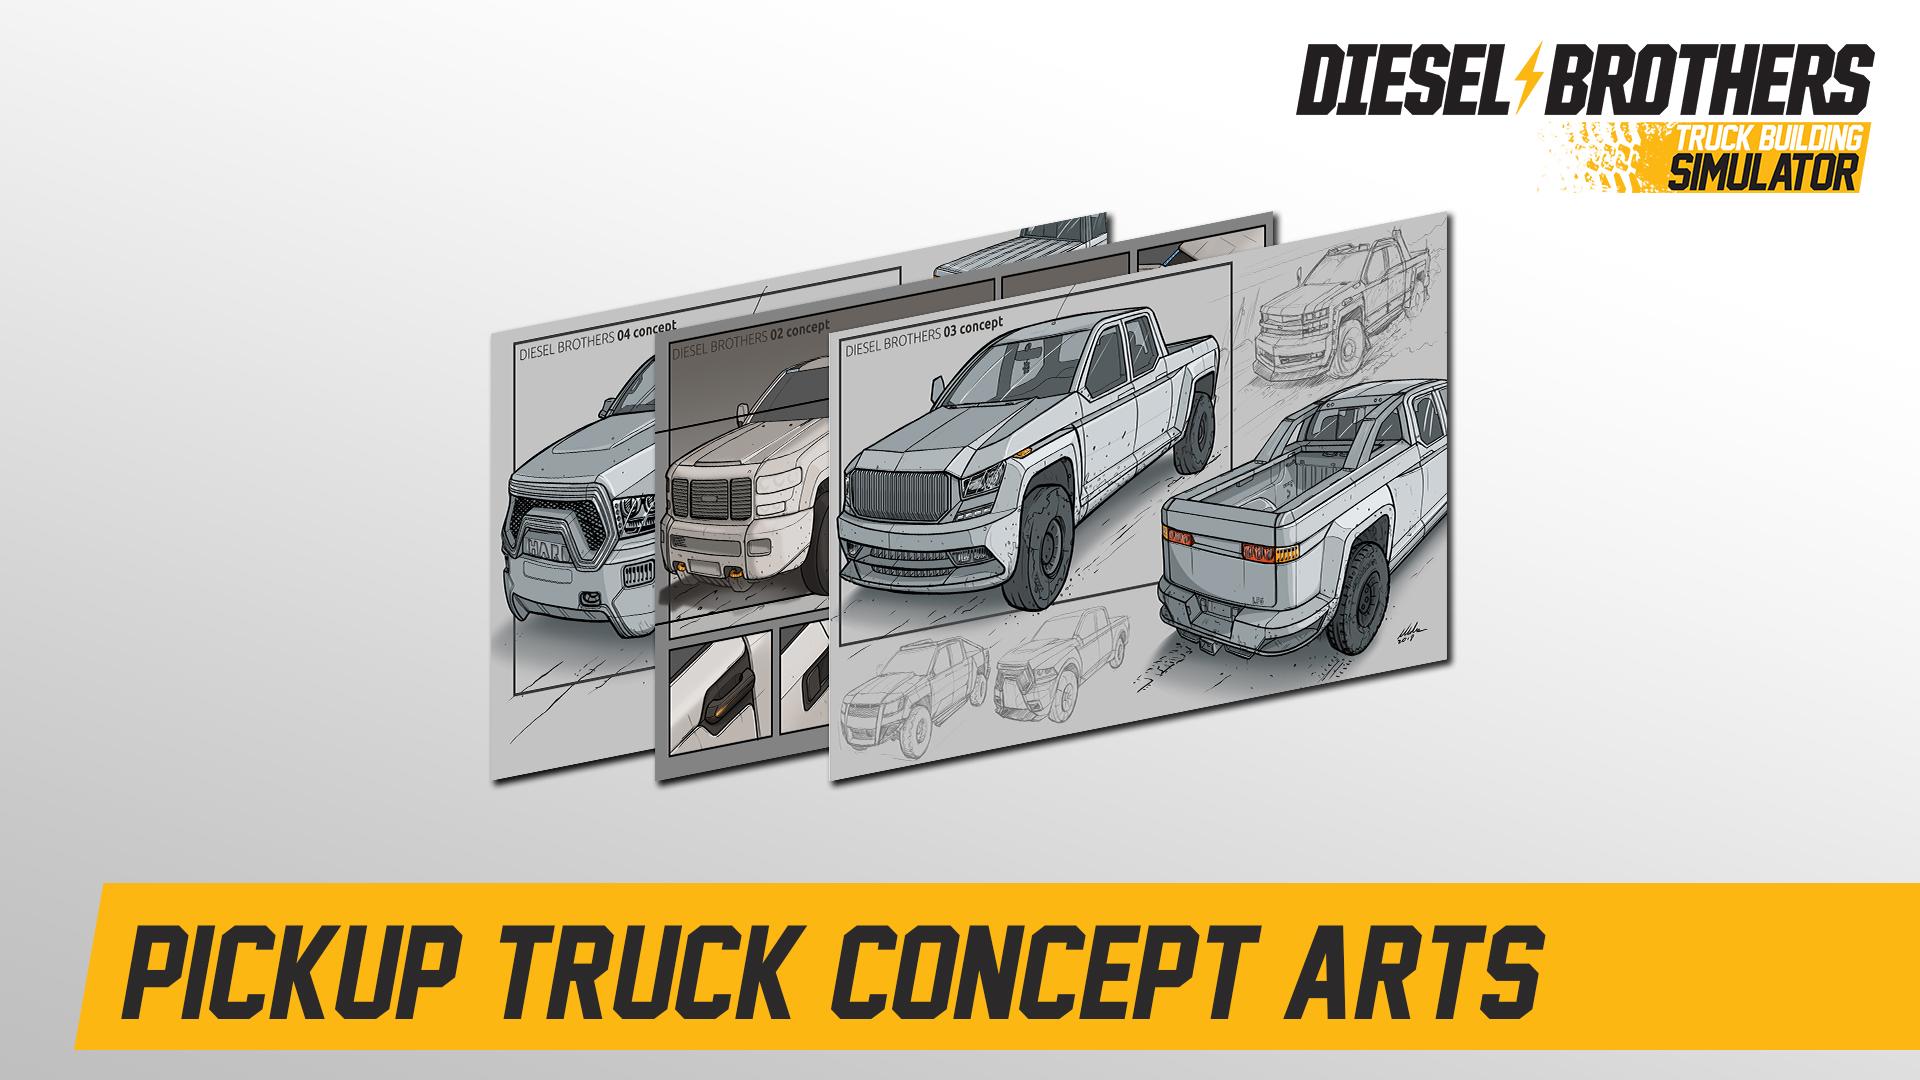 Diesel Brothers: Truck Building Simulator Pickup